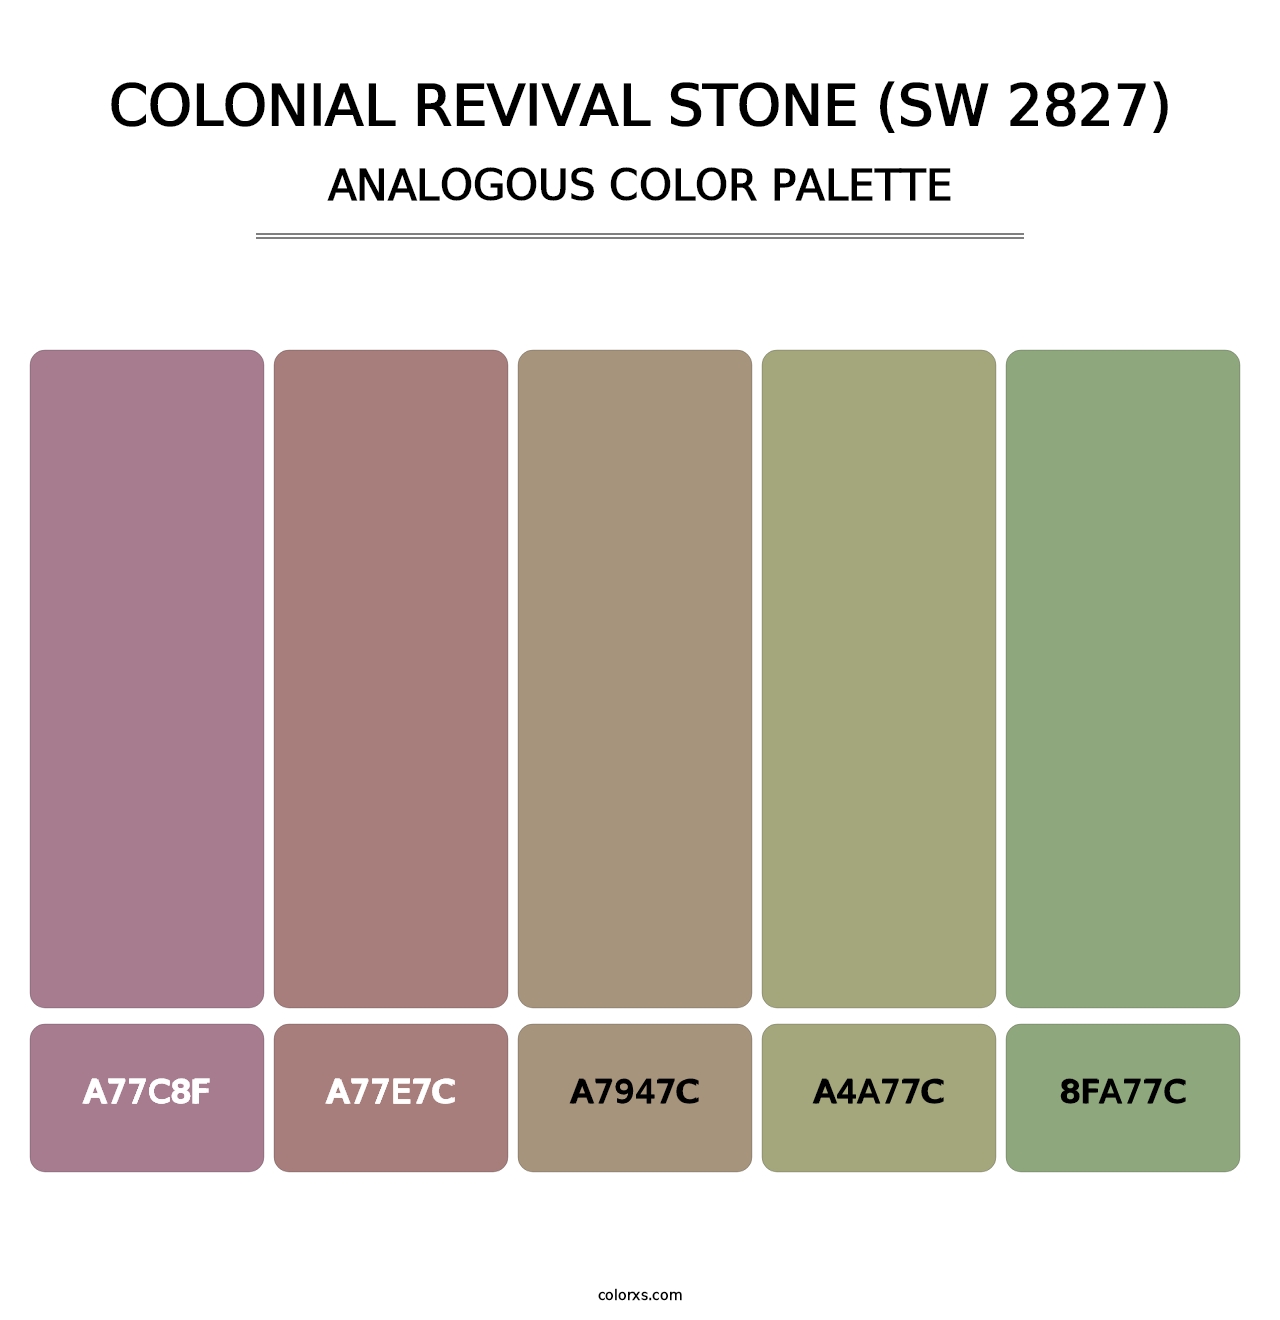 Colonial Revival Stone (SW 2827) - Analogous Color Palette